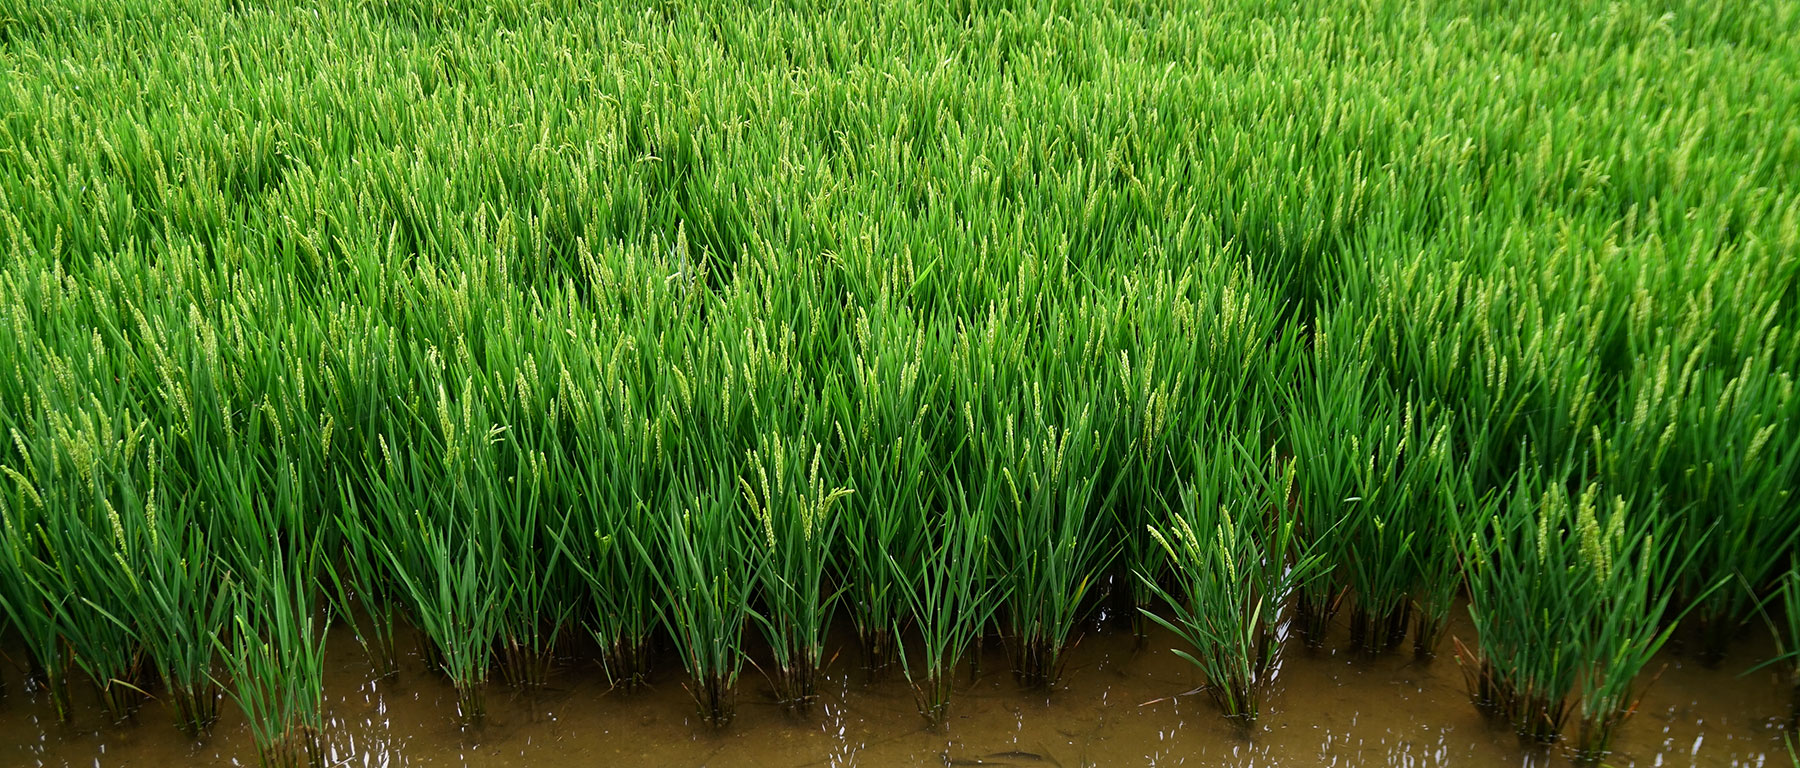 Plantas de arroz en cultivo